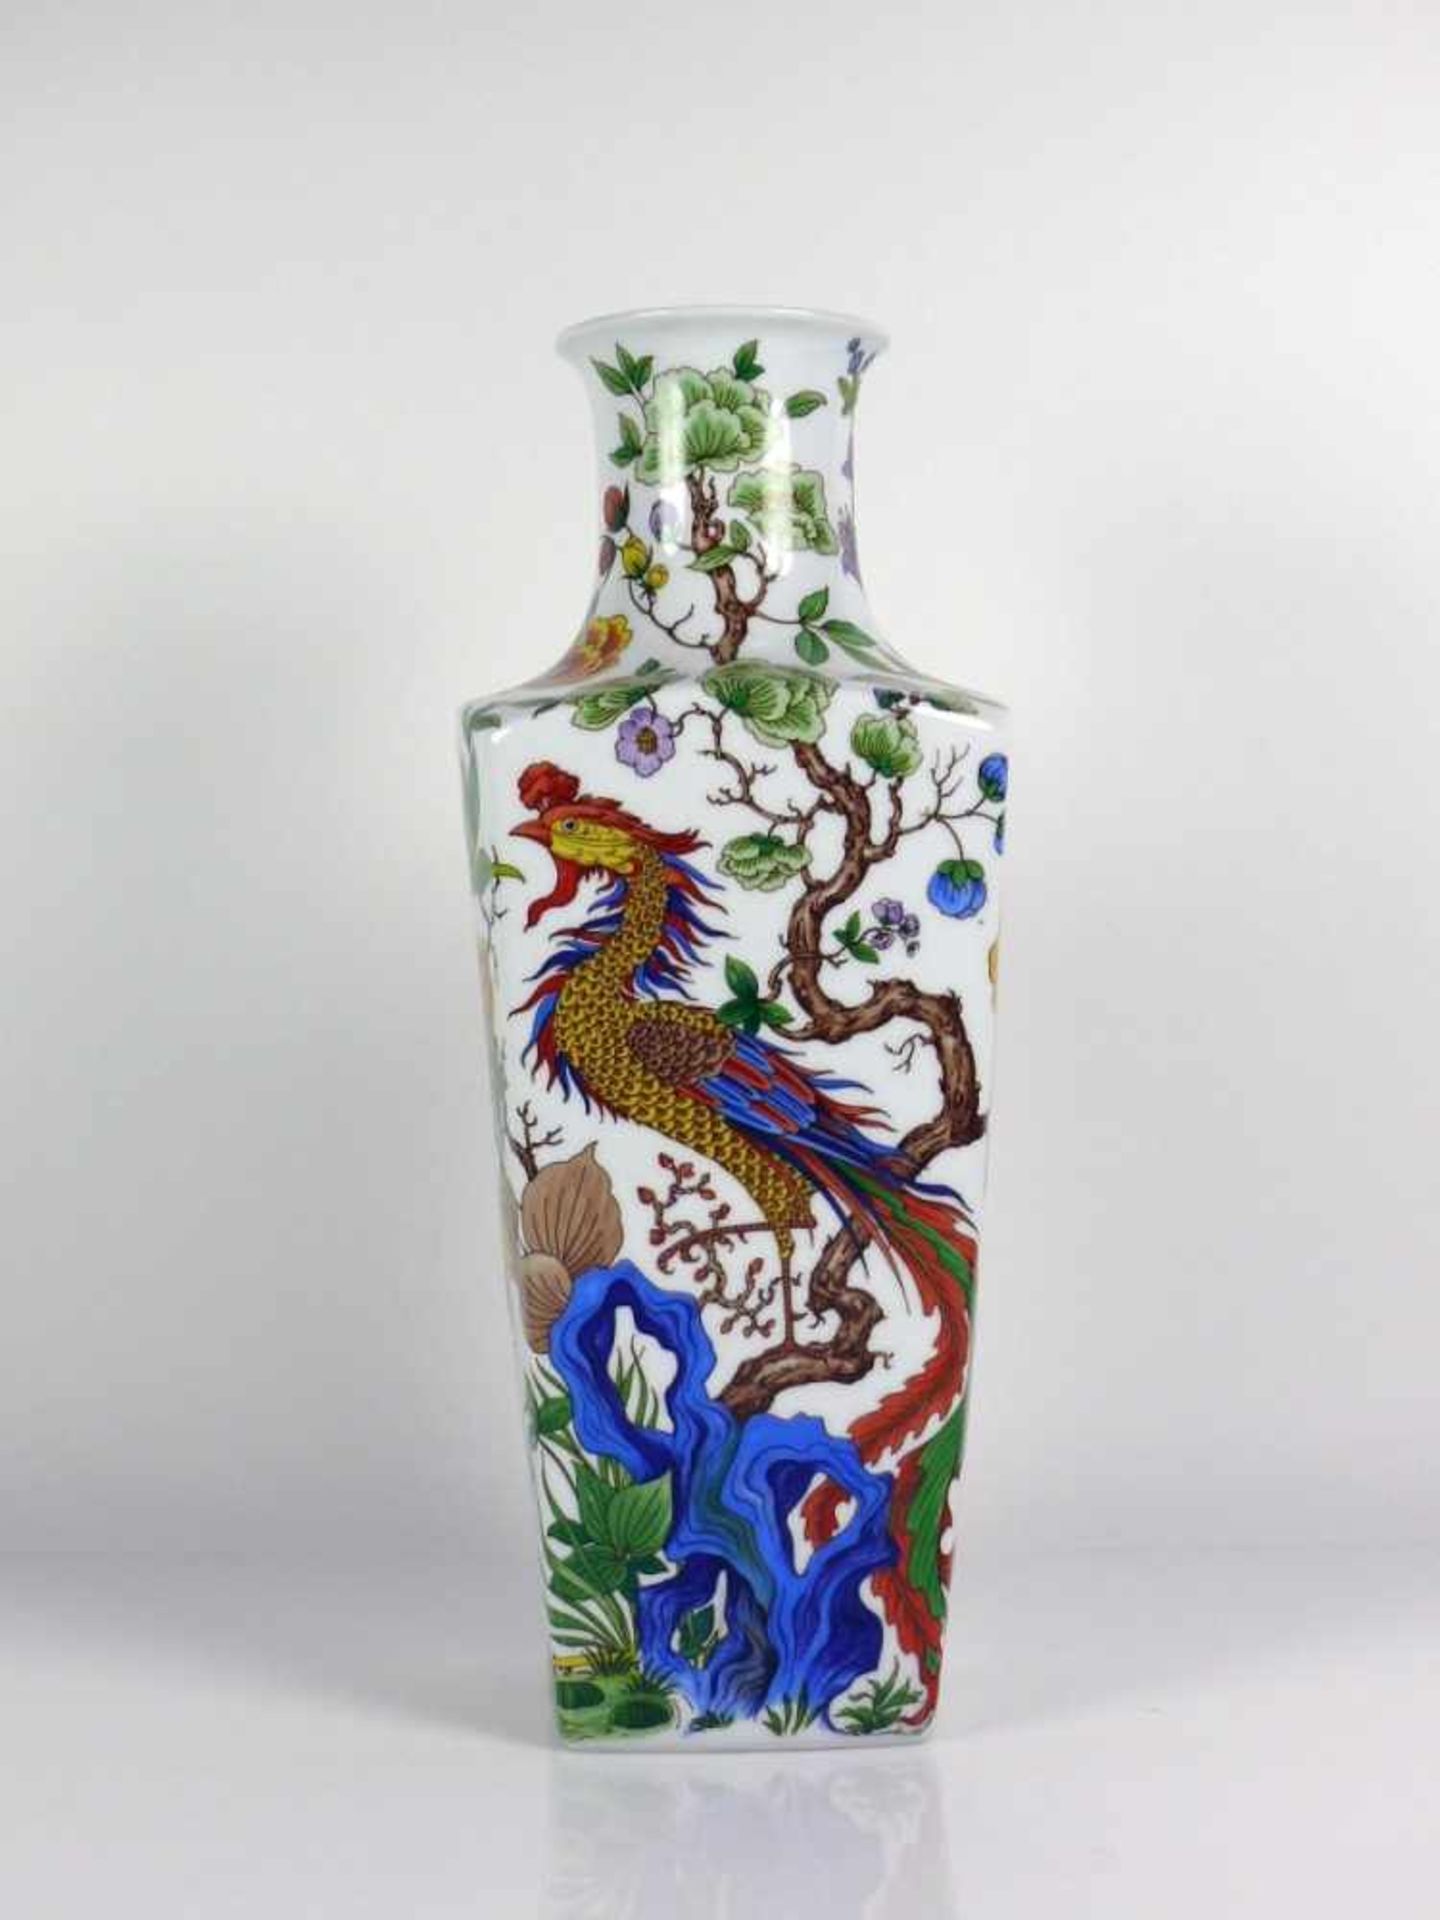 Vase (20. Jh.) viereckiger Korpus mit eingezogenem Hals; umlaufender polychrom floral bemalter